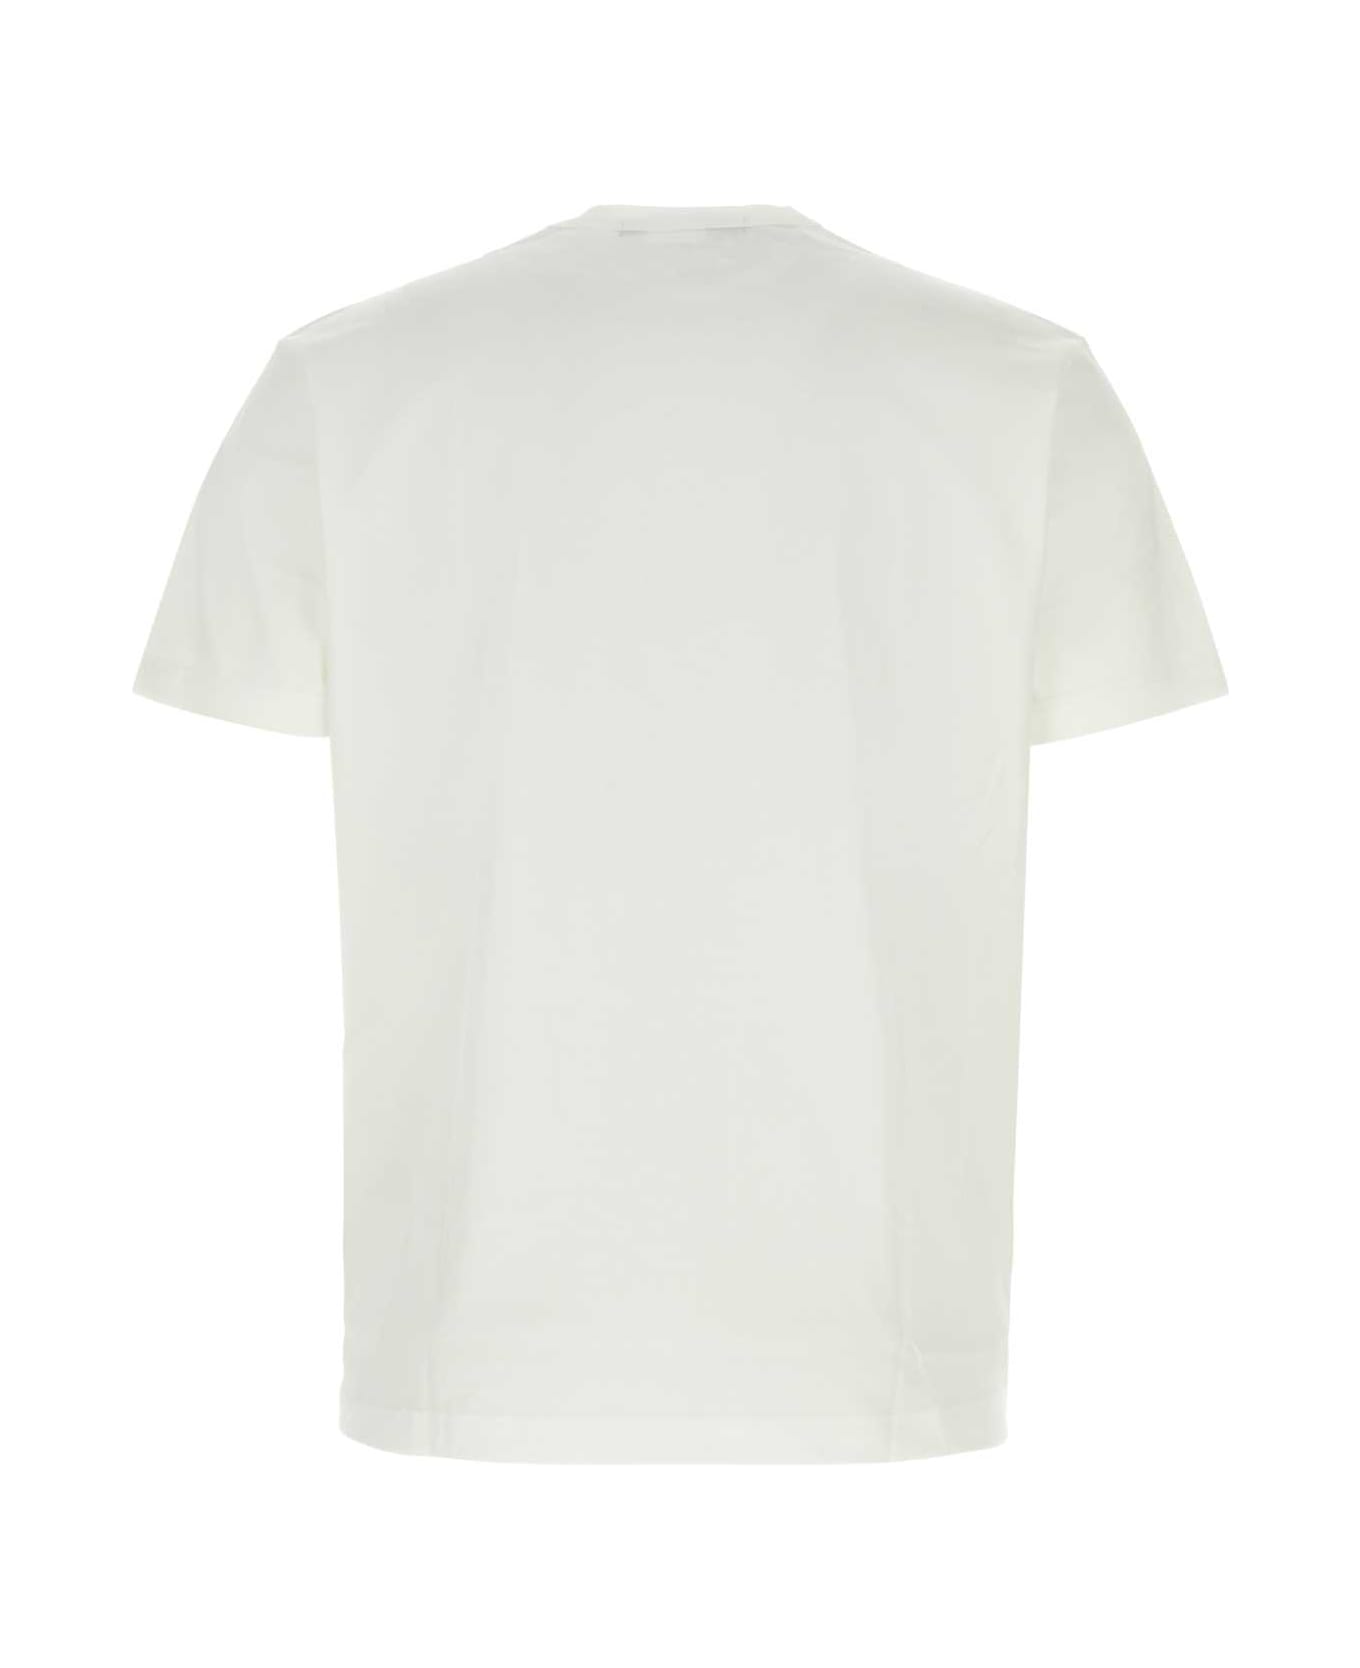 Junya Watanabe White Cotton T-shirt - WHITEBLURD